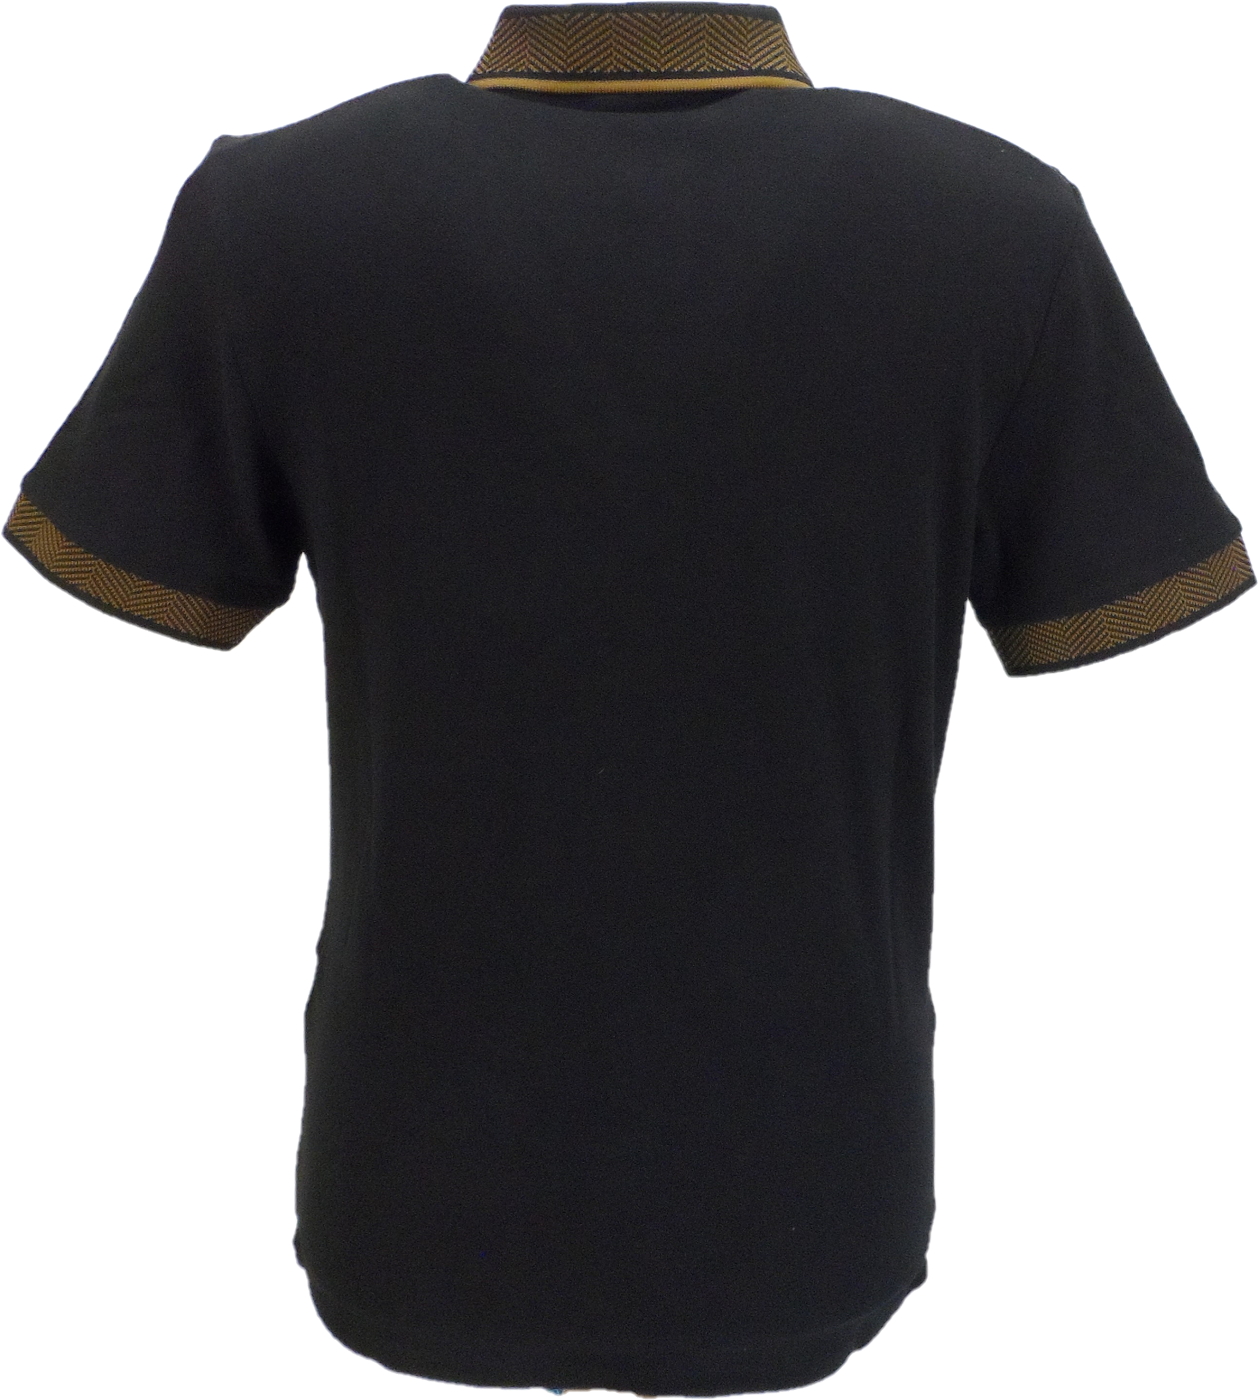 Ben Sherman Men's Black 100% Cotton Polo Shirt